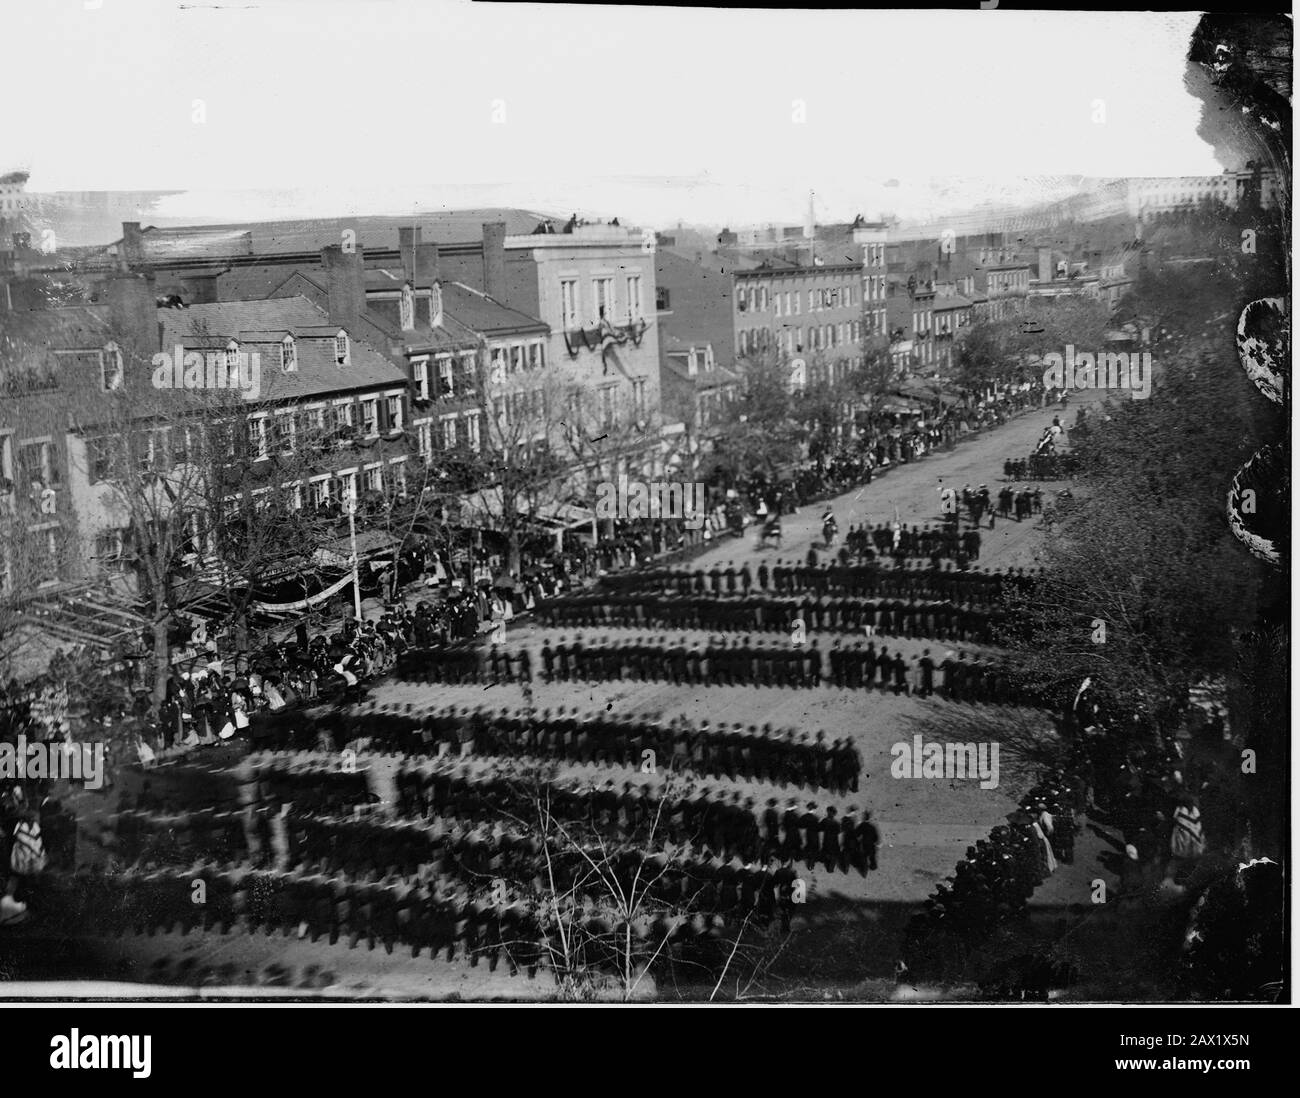 1865 , 19 april , WASHINGTON ,DC , USA : The U.S.A. President ABRAHAM LINCOLN ( 1809 - 1865 ). Funeral of President Abraham Lincoln passing on Pennsylvania Avenue   -  Presidente della Repubblica - Stati Uniti -  USA - Abramo - funerale - carro funebre - corteo ----  Archivio GBB Stock Photo